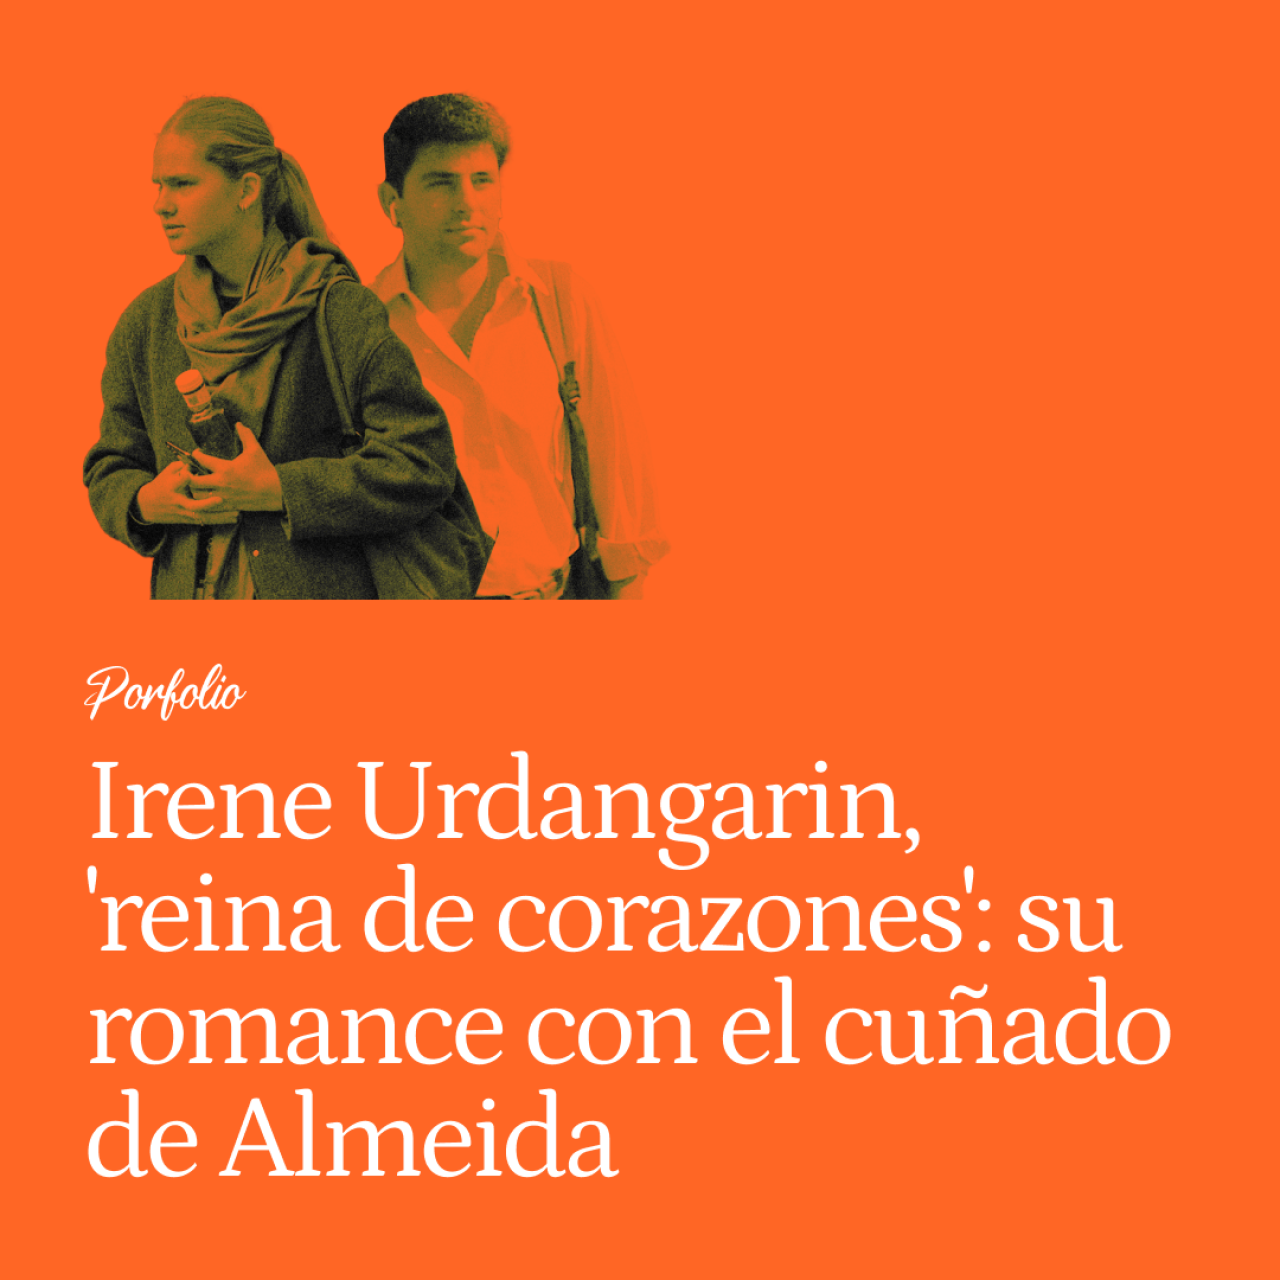 Irene Urdangarin, nueva 'reina de corazones': su romance con el cuñado de Almeida, su suspenso en el carnet y sus planes de verano